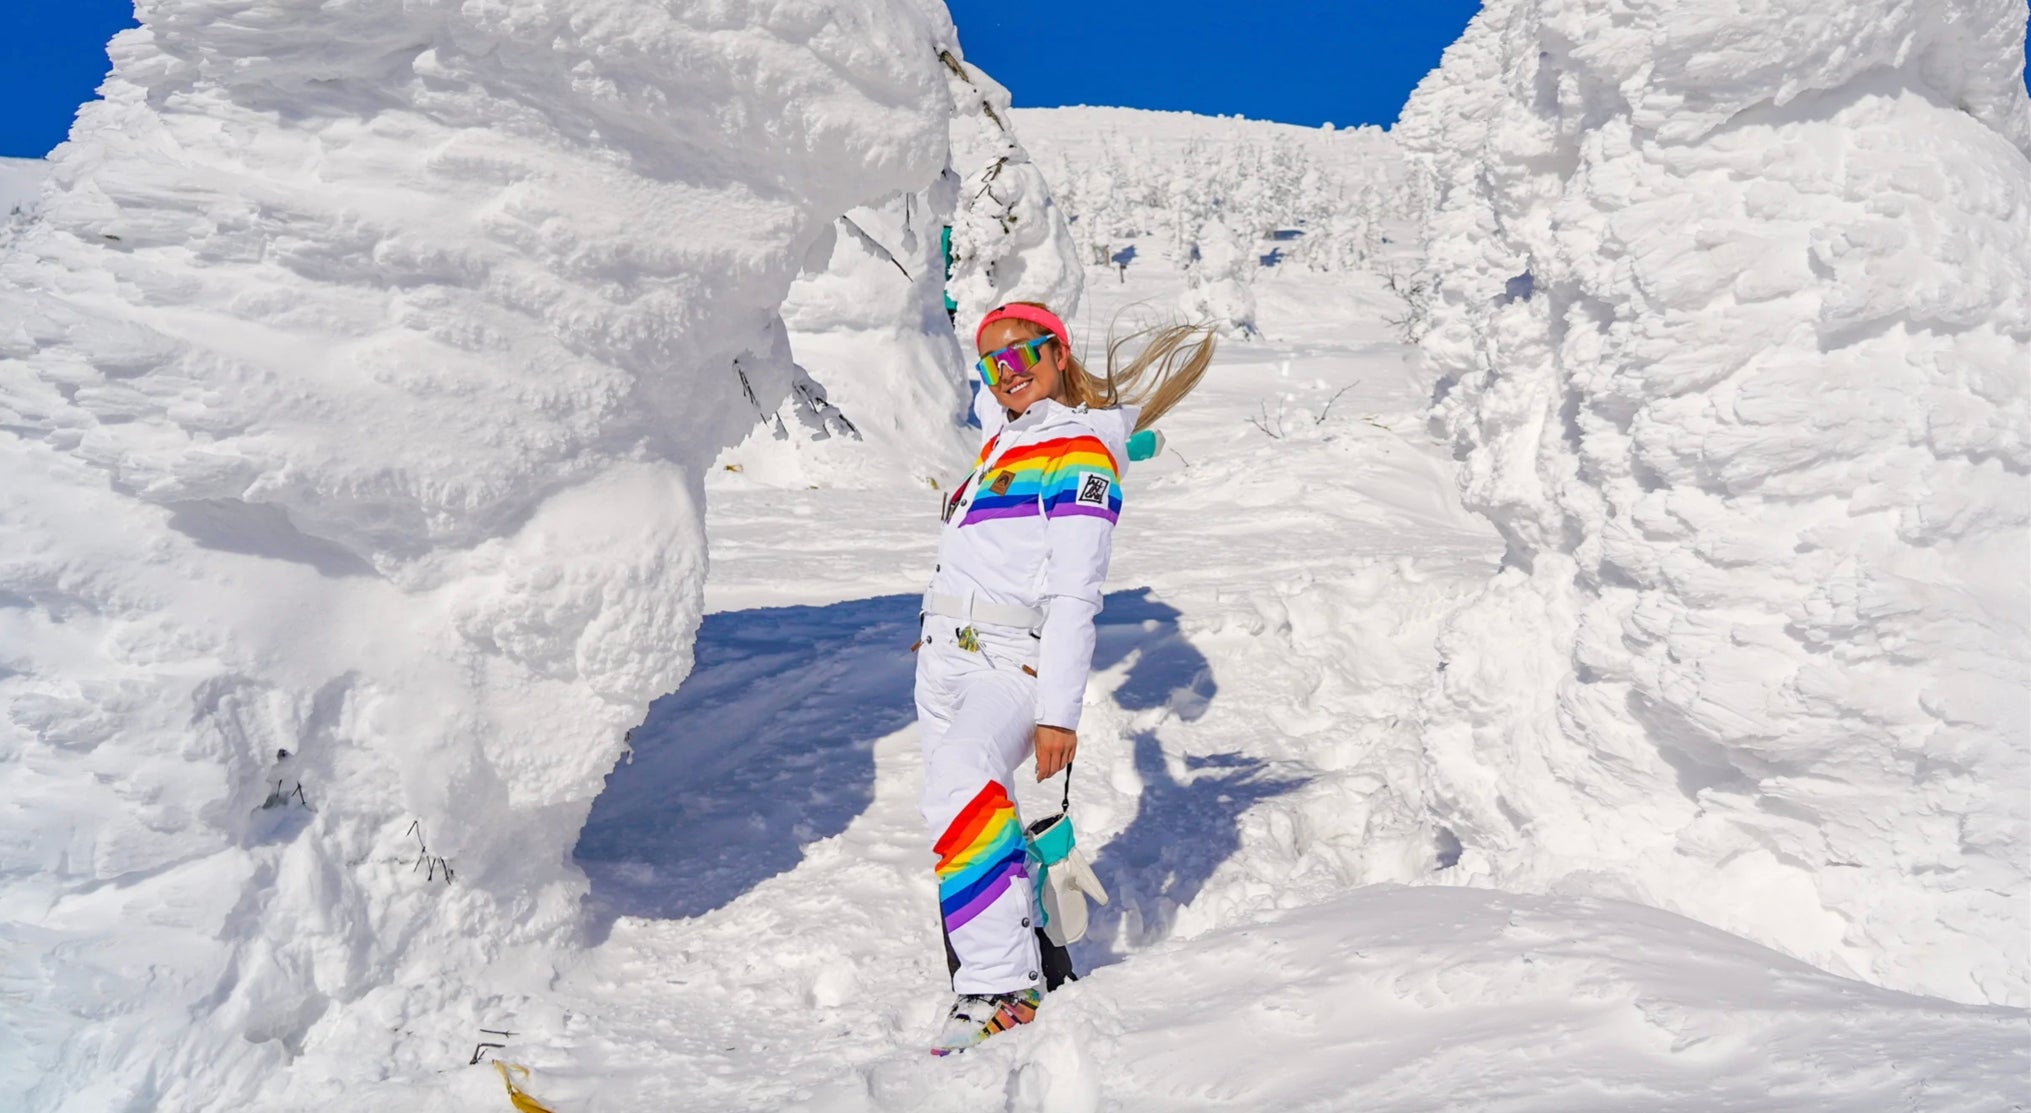 Rainbow Road - White, Retro Ski Suit